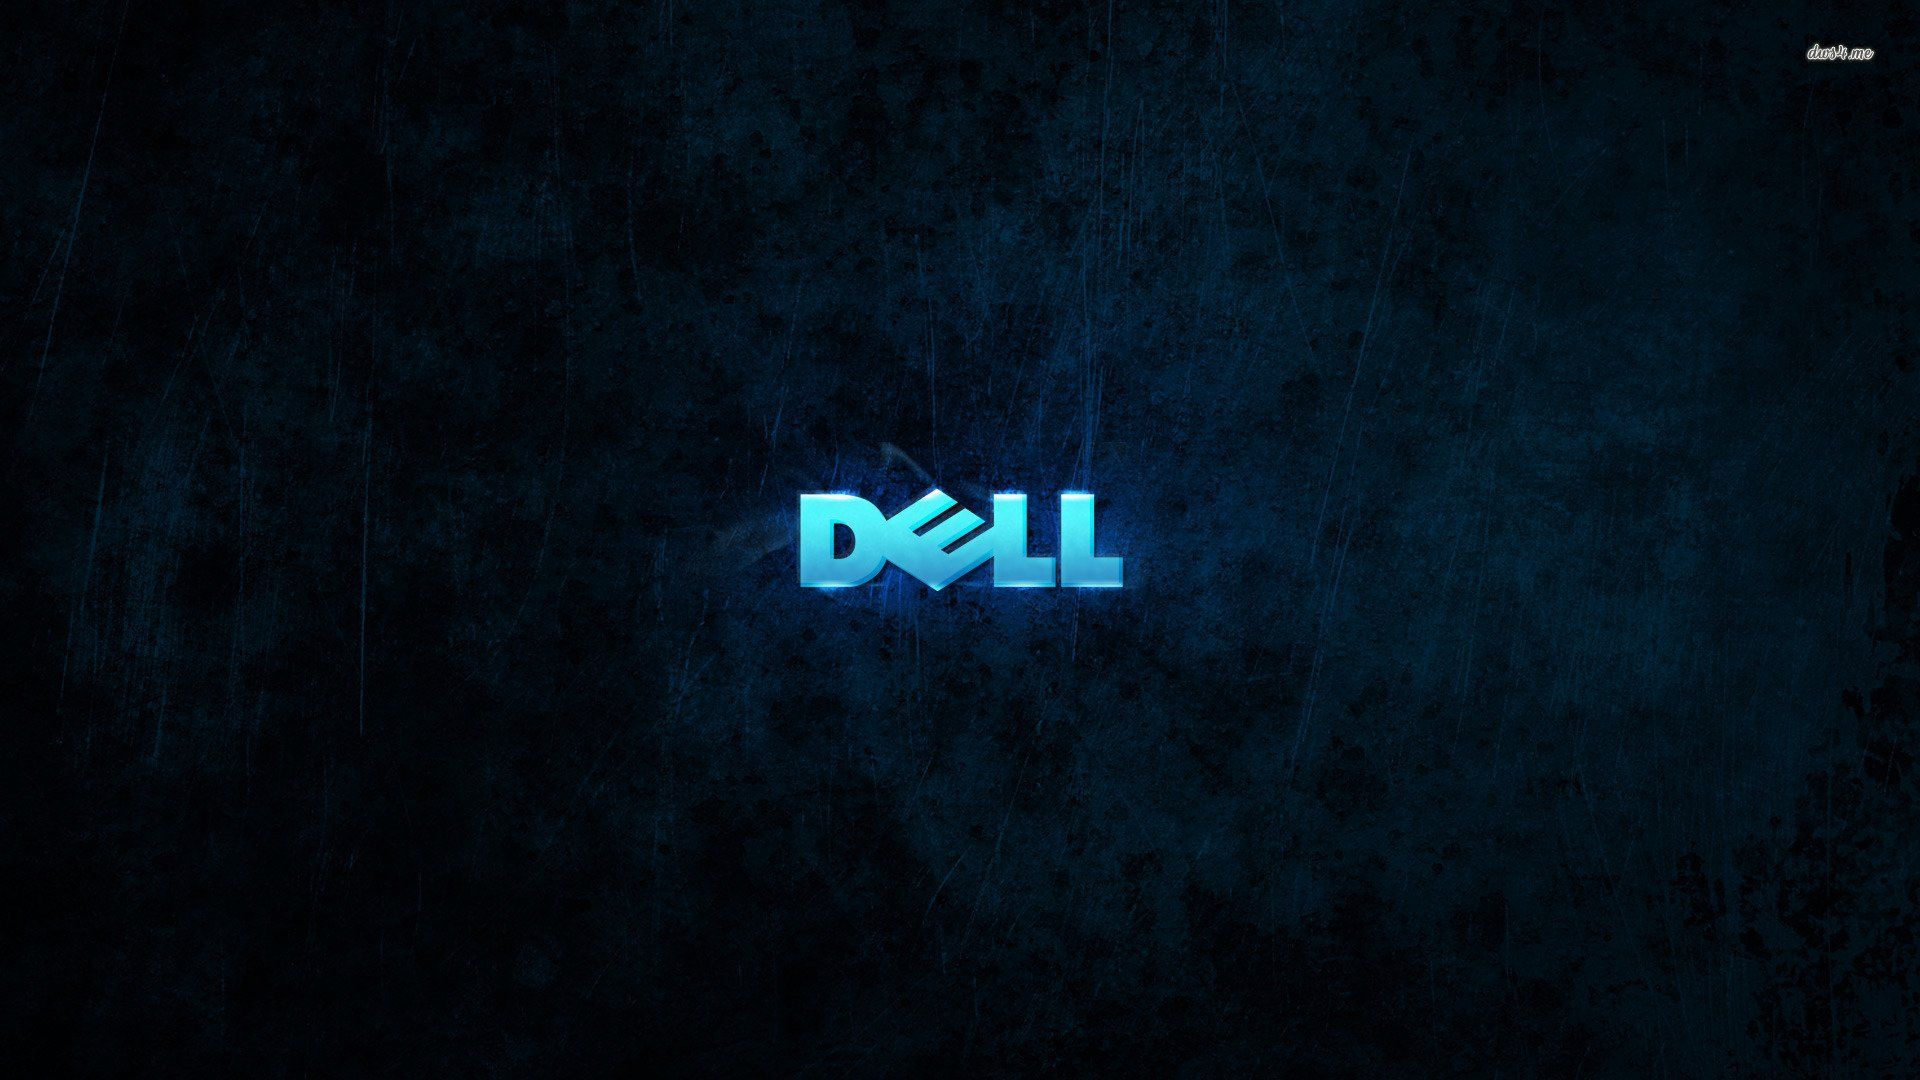 Dell Precision Wallpaper Free Dell Precision Background